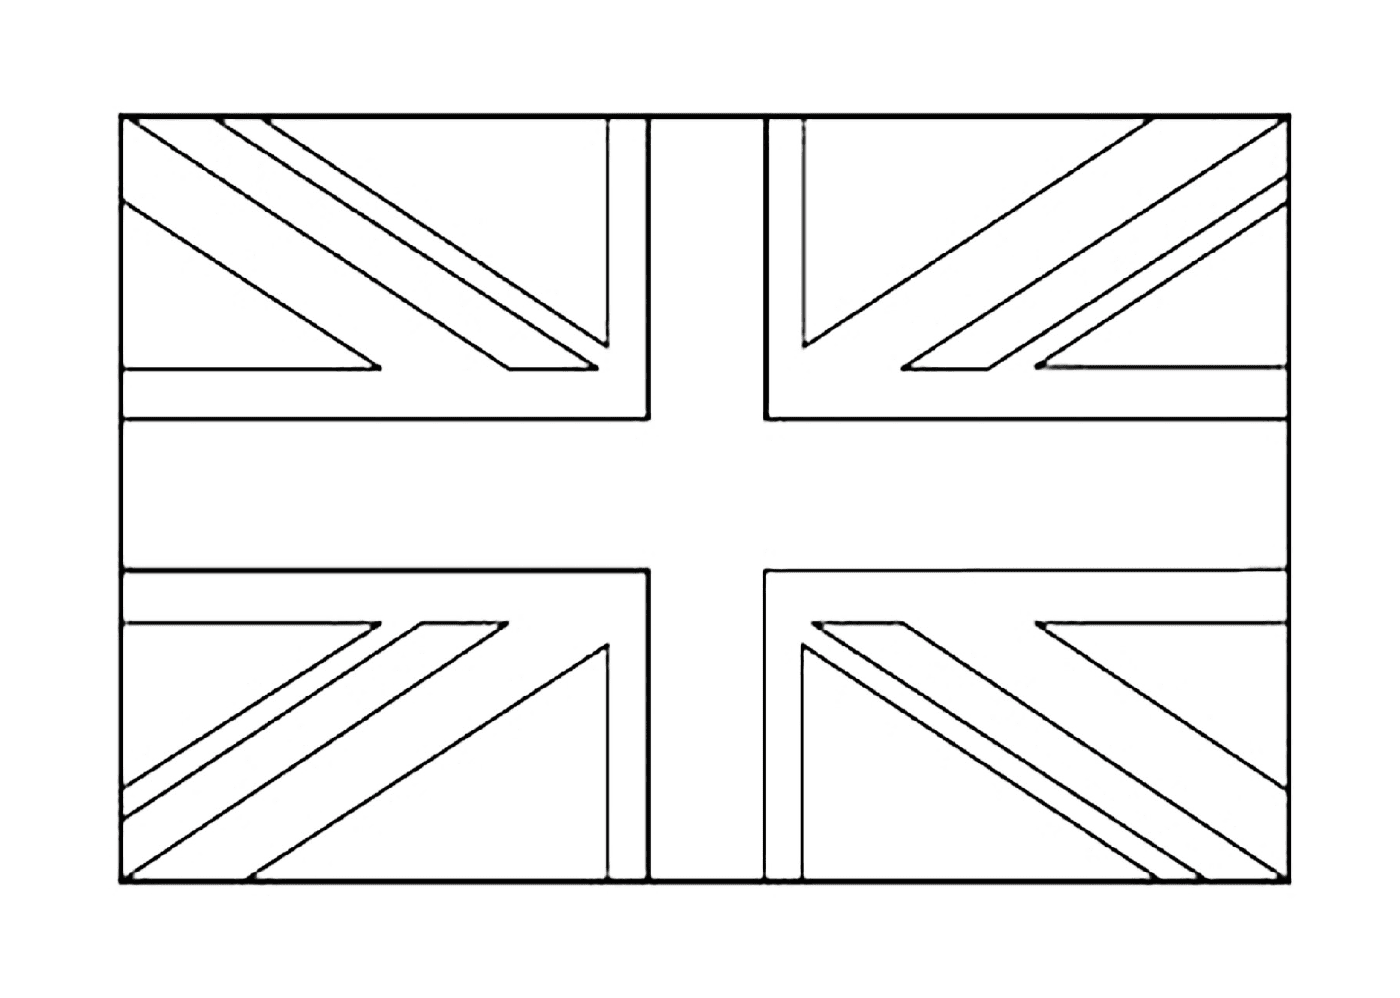  Una bandiera britannica 